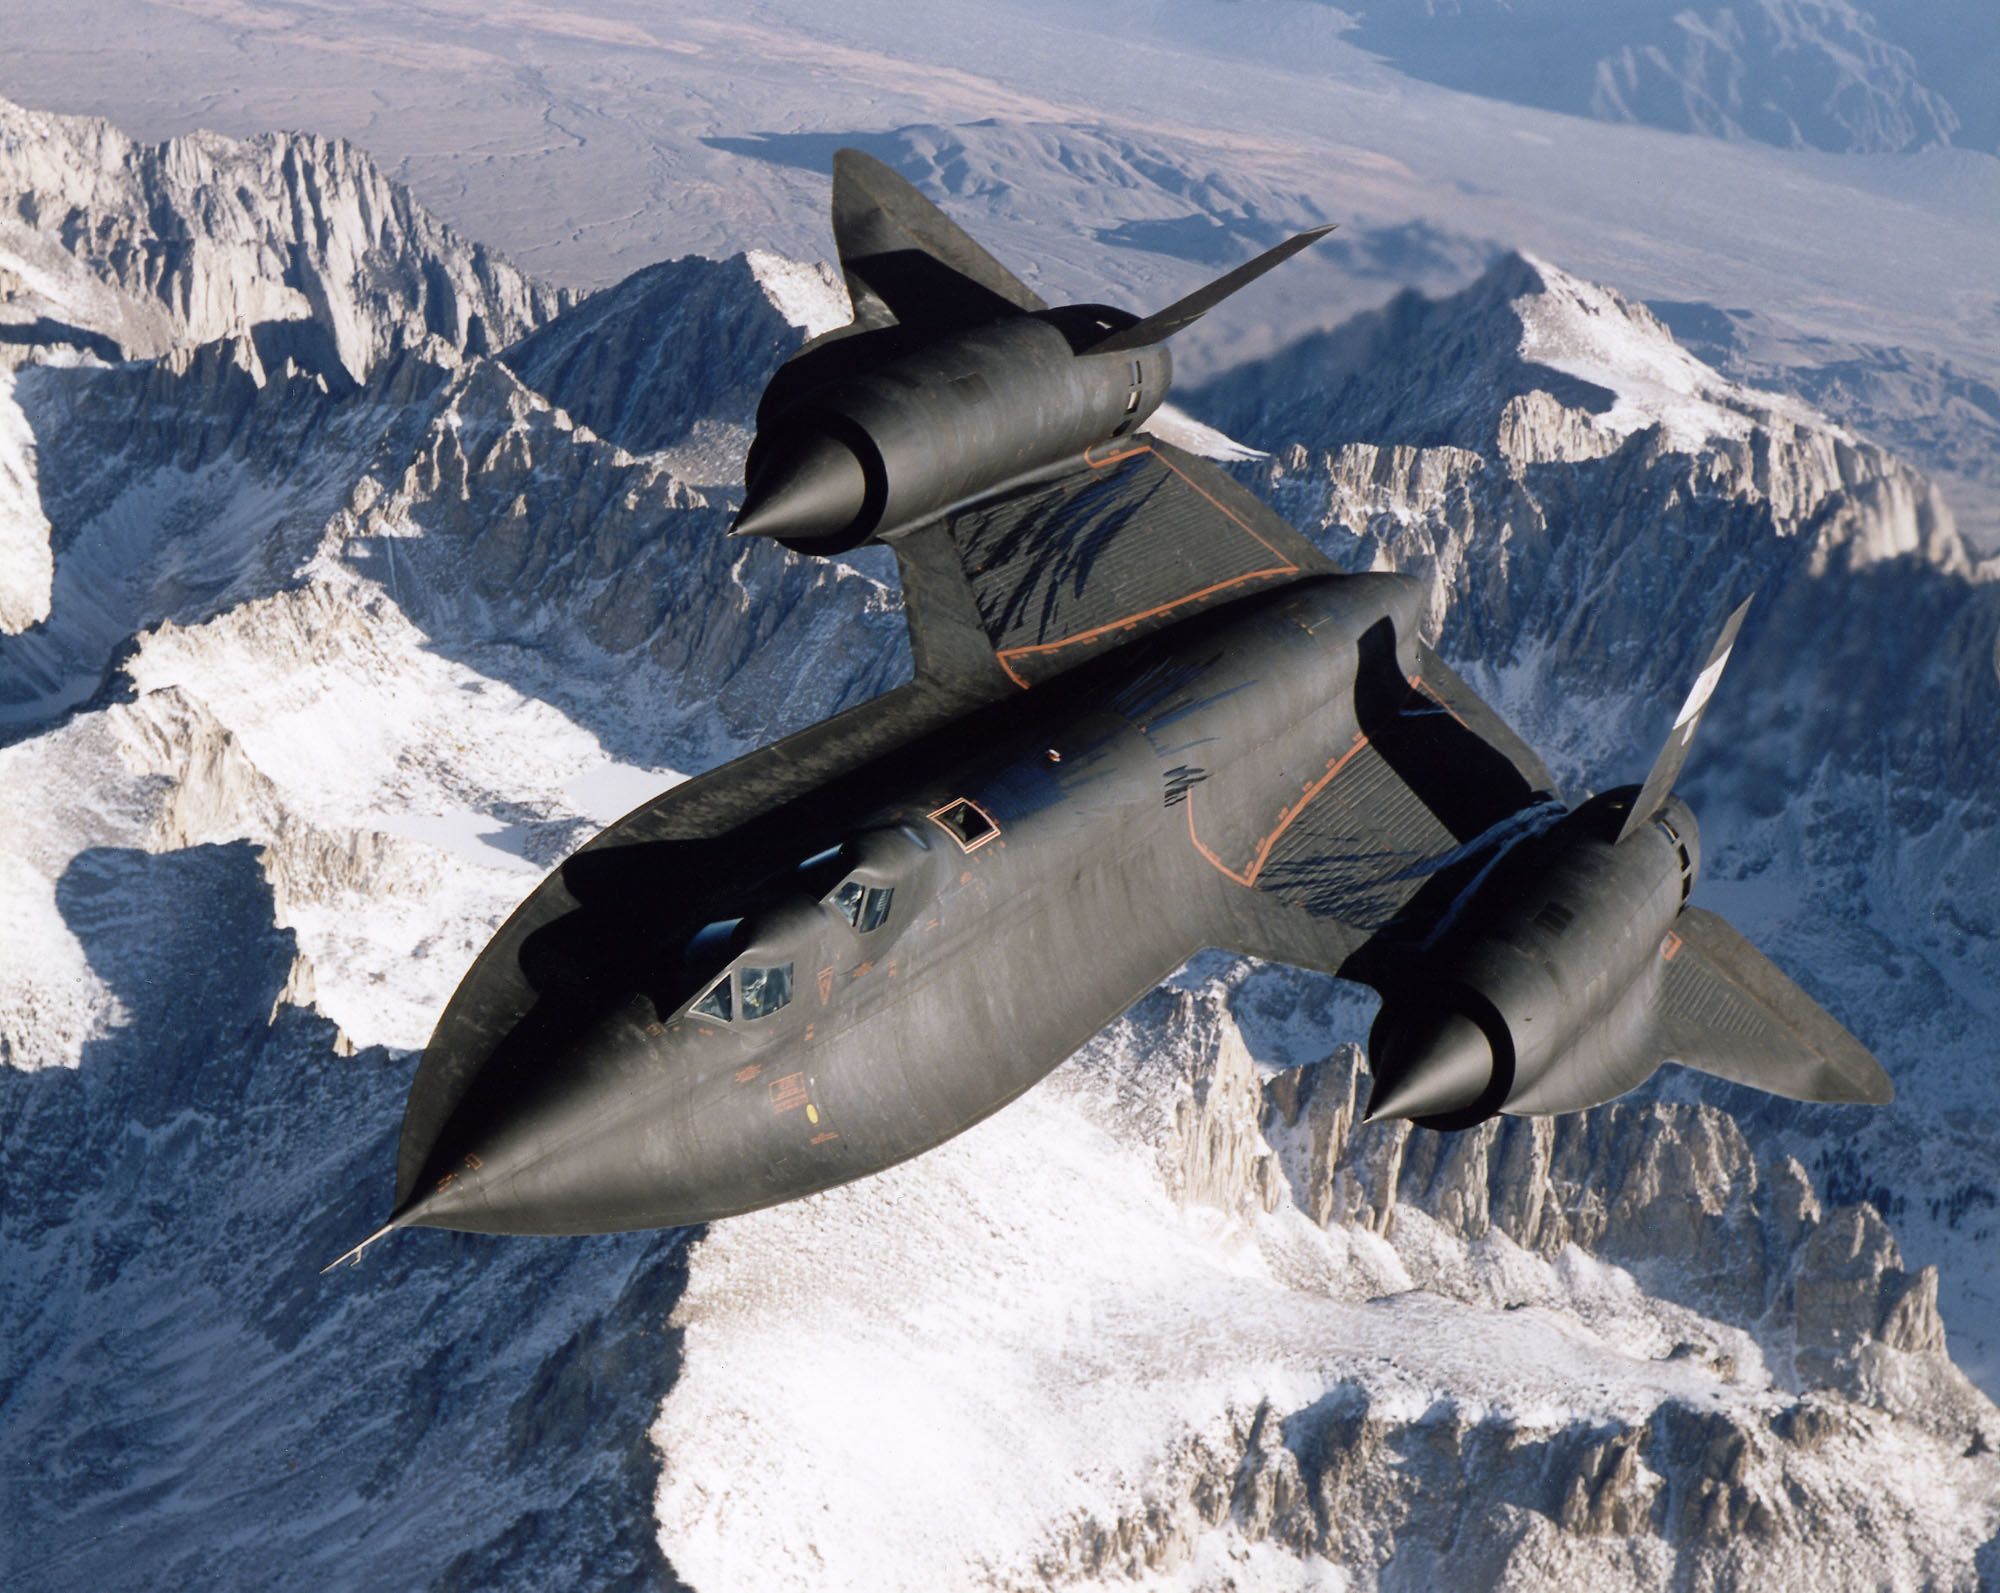 Sr-71 Blackbird: The Cold War Spy Plane That'S Still The World'S Fastest  Airplane | Cnn